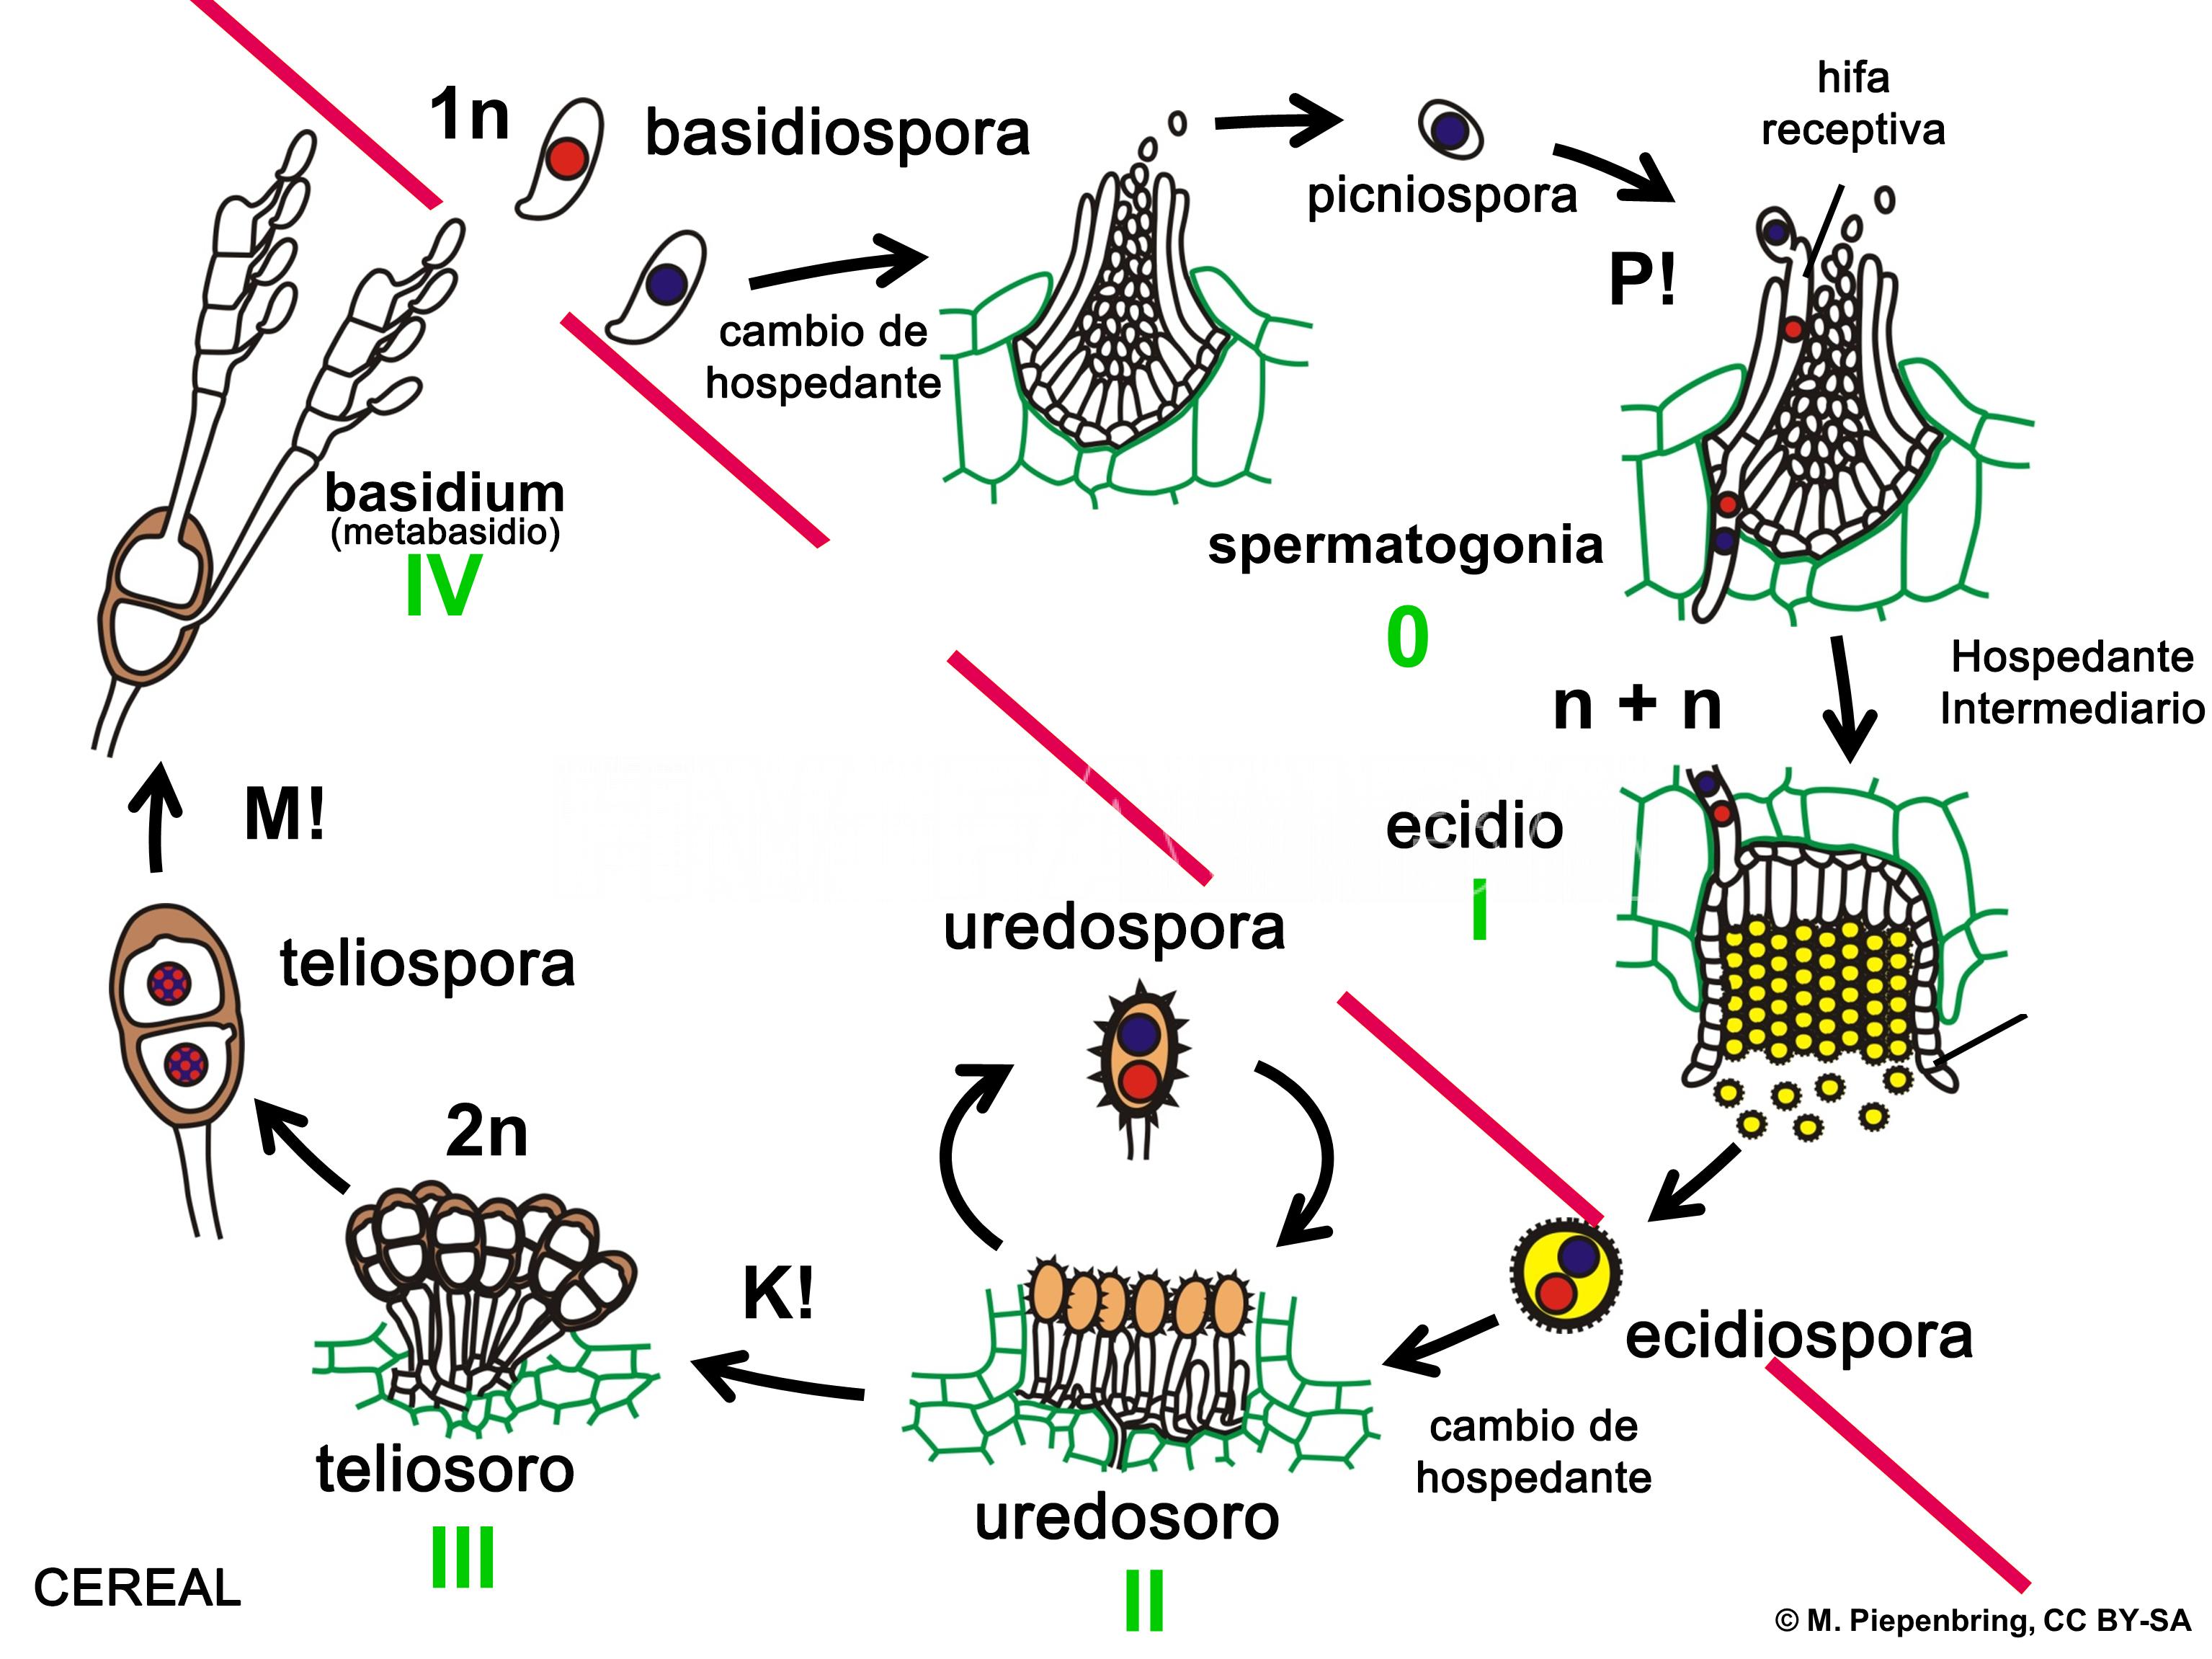 Representación esquemática del ciclo de una roya de cereal heteroica macrocíclica, como por ejemplo Puccinia striiformis f. sp. tritici.  P! = plasmogamia; K! = cariogamia; M! = meiosis; 2n = células diploides; 1n = células haploides; n + n = células dicarióticas.